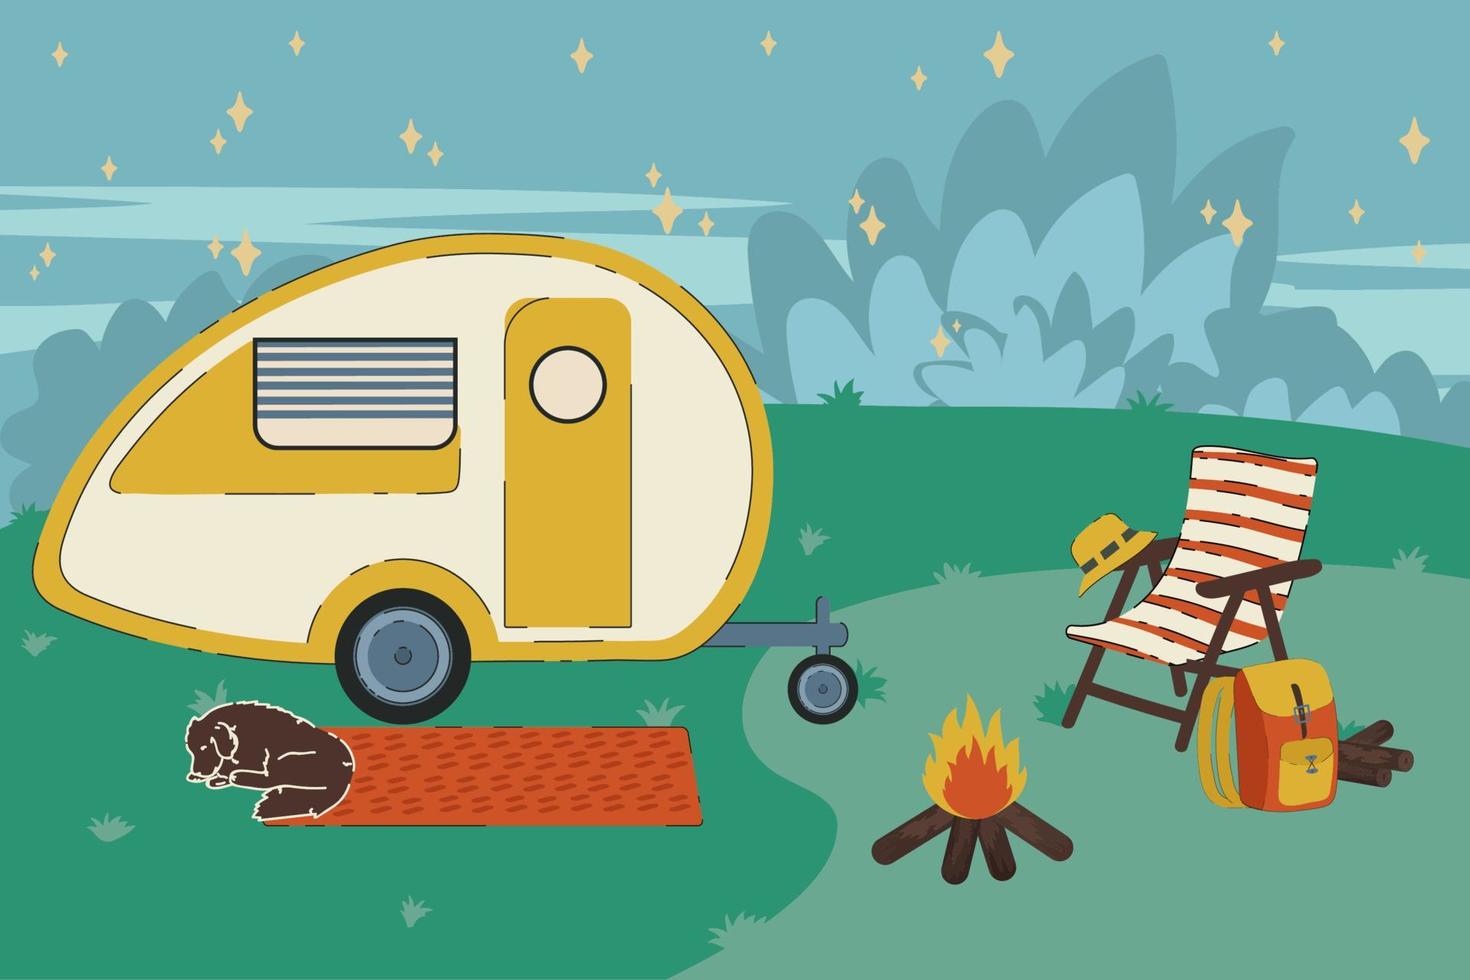 colorida ilustración de una furgoneta de camping en el bosque. remolque para una casa al borde de la carretera entre los árboles. un vehículo de recreación. concepto de vector de viajes de camping. ilustración vectorial